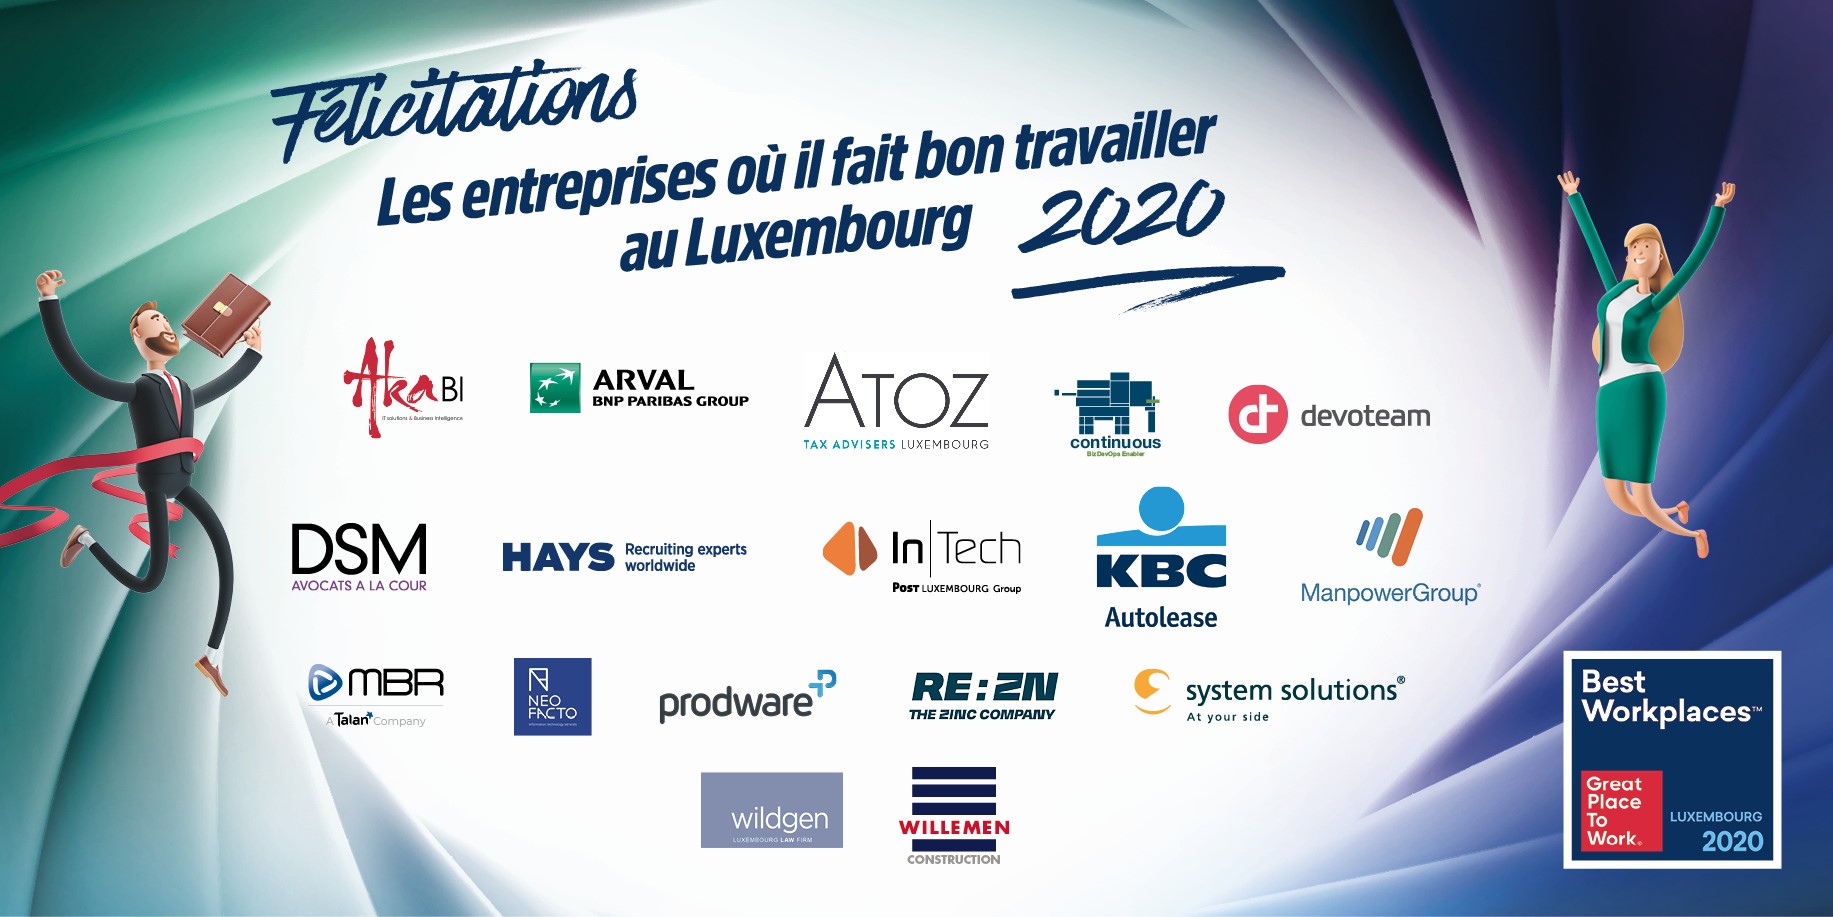  Palmarès des 20 entreprises où il fait bon travailler au Luxembourg en 2020